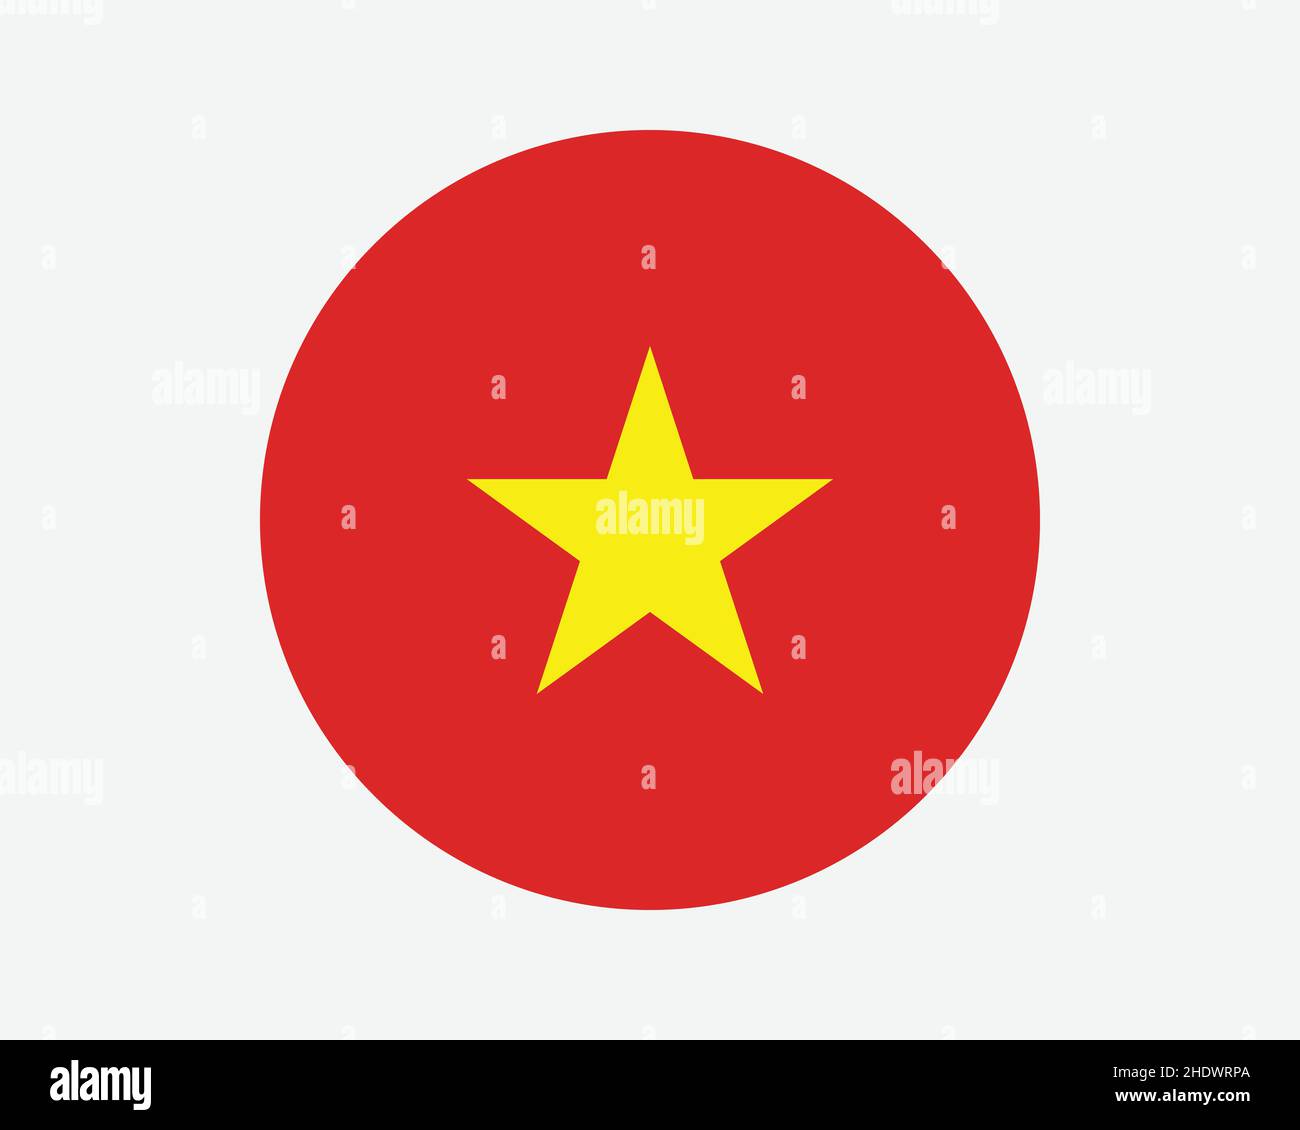 Vietnam Round Country Flagge. Vietnamesischer Kreis Nationalflagge. Kreisförmiges Knopfbanner der sozialistischen Republik Vietnam. EPS-Vektorgrafik. Stock Vektor